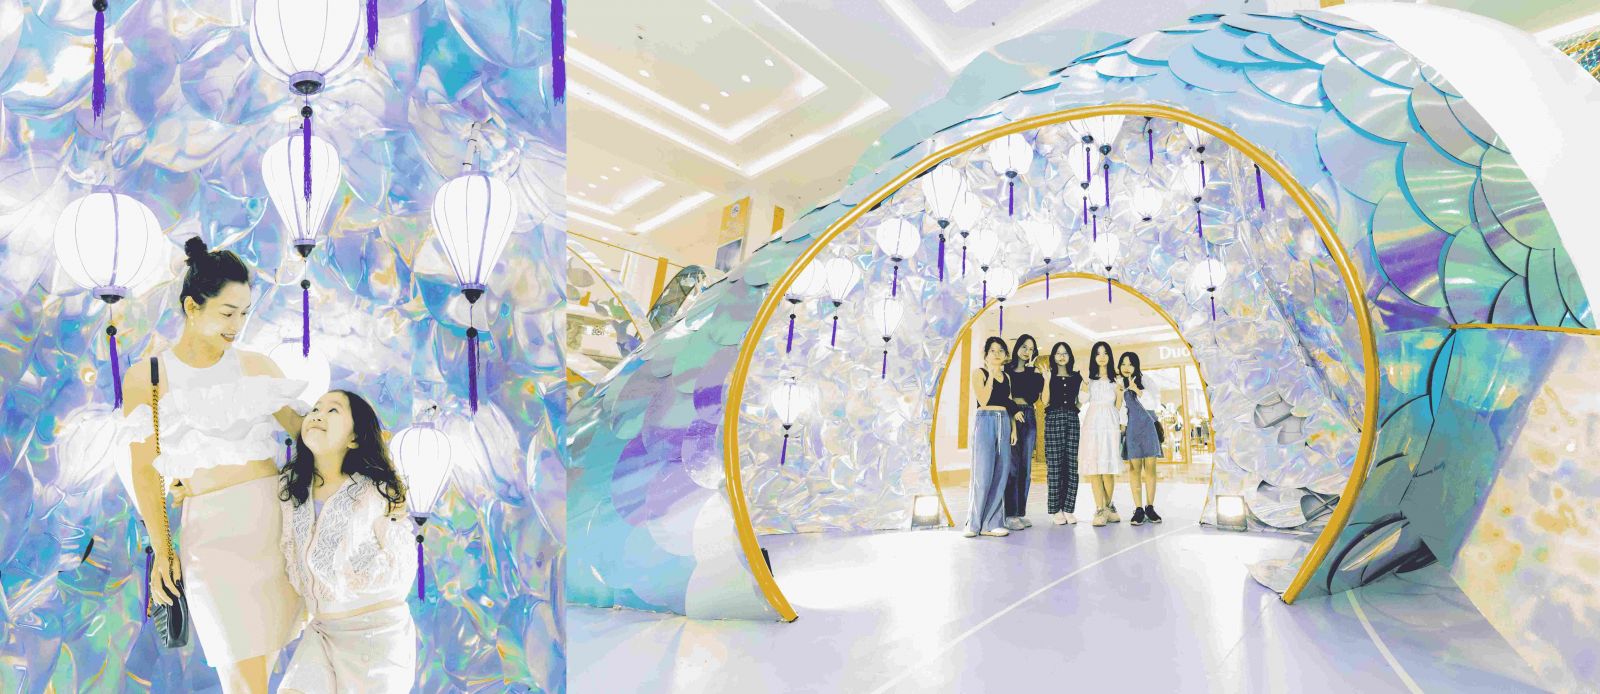 Nhiều bạn trẻ và các gia đình thích thú với mô hình Cá chép bảy màu lung linh tại Vincom Mega Mall Royal City